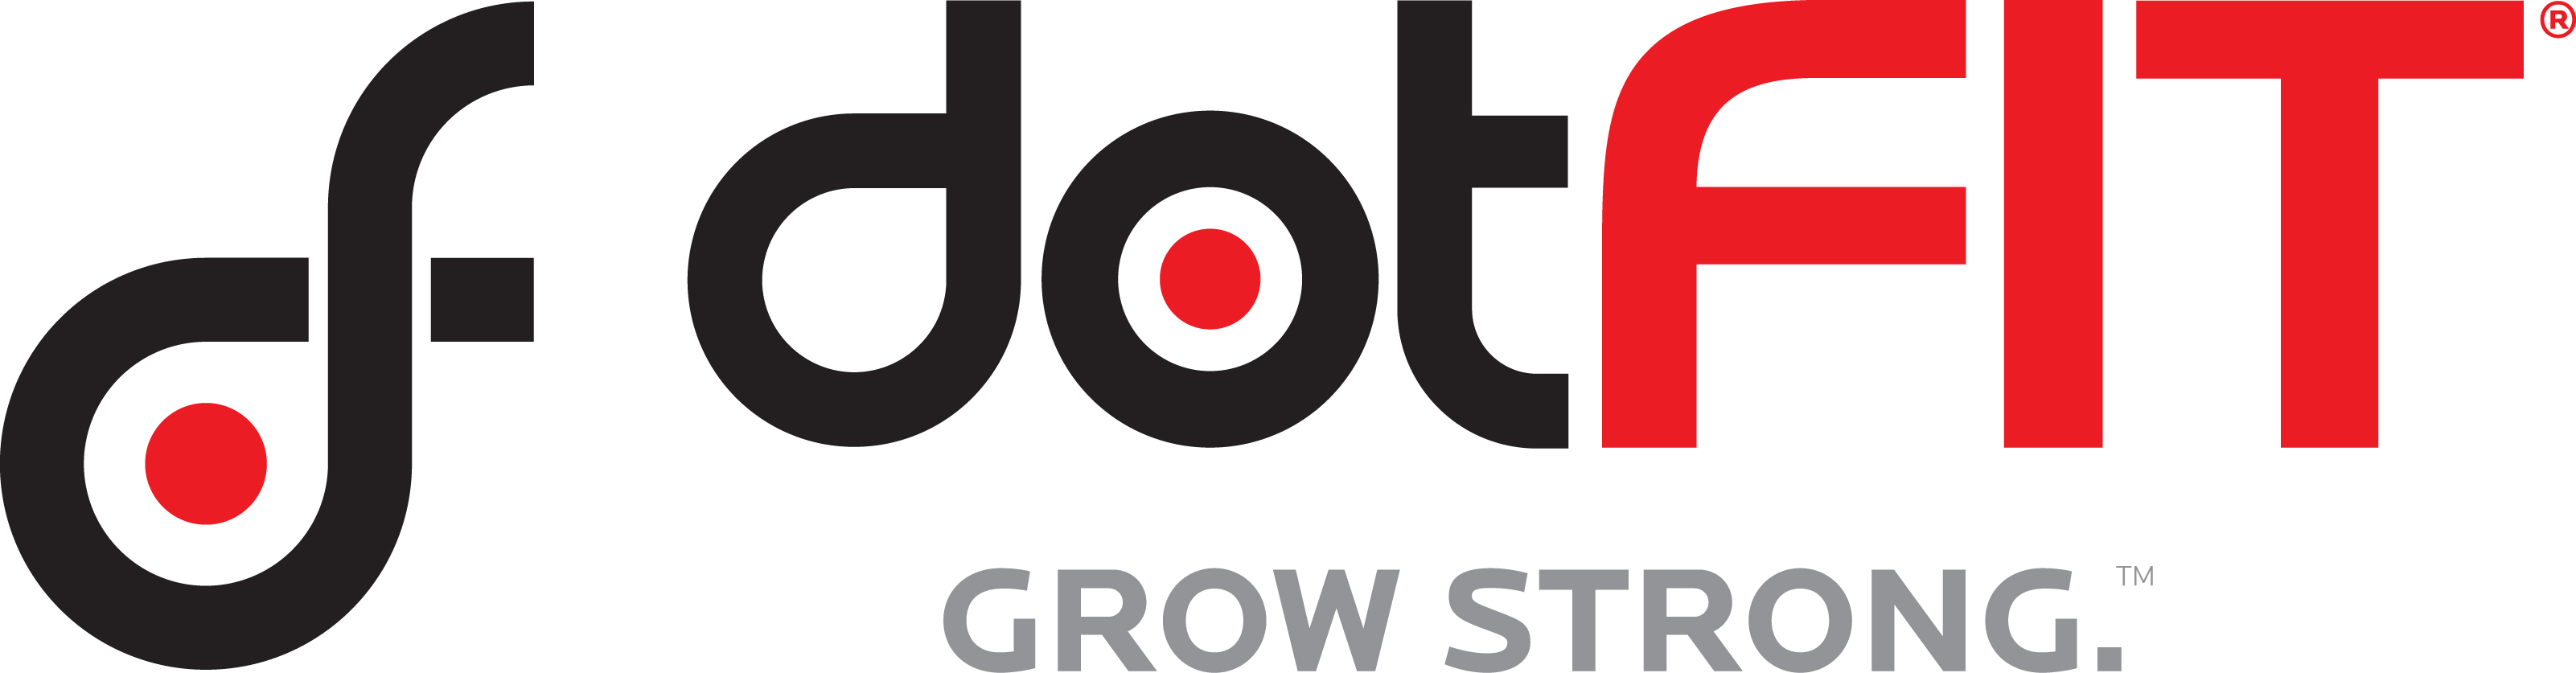 dotFIT logo